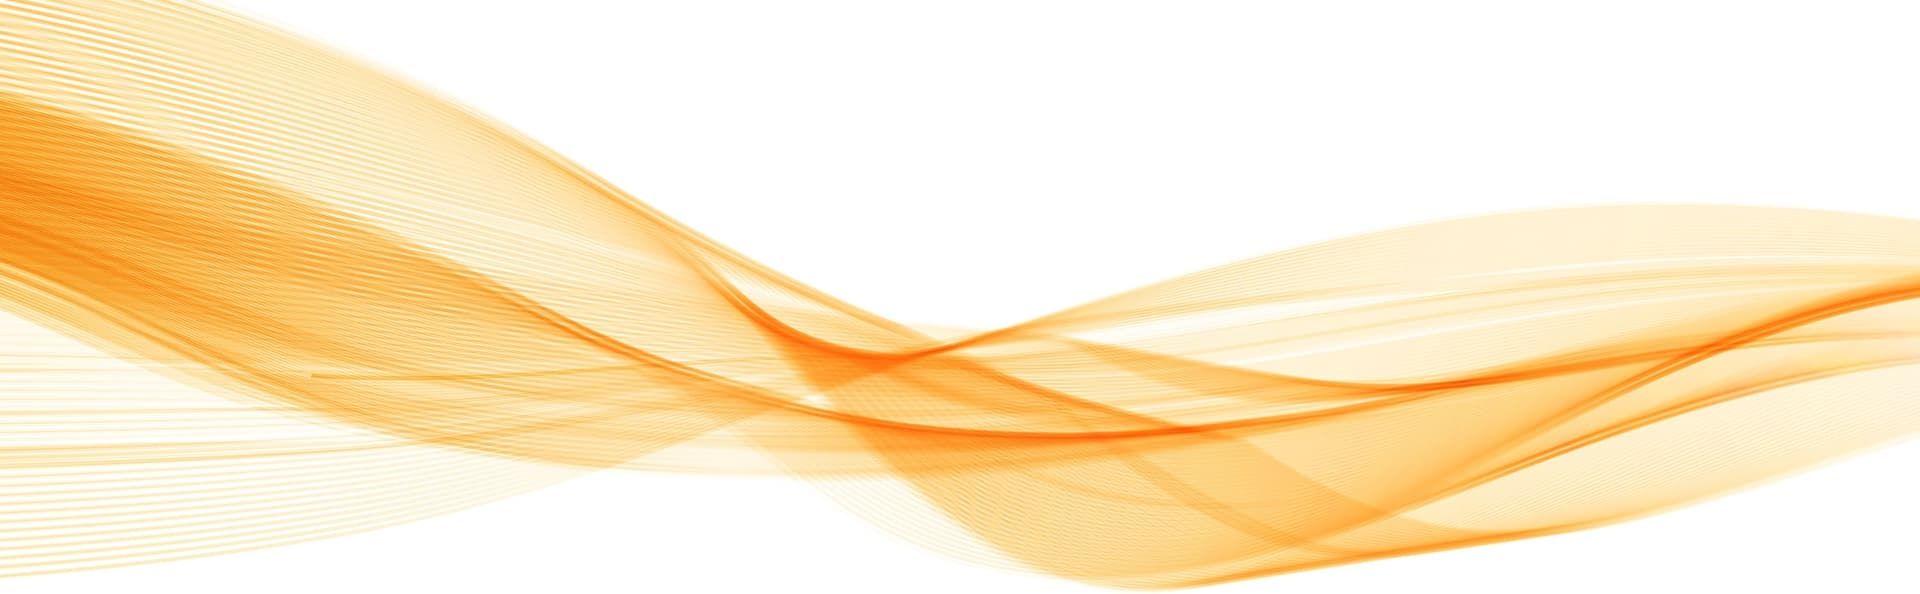 Orangefarbene Wellen - Abstrakte Grafik